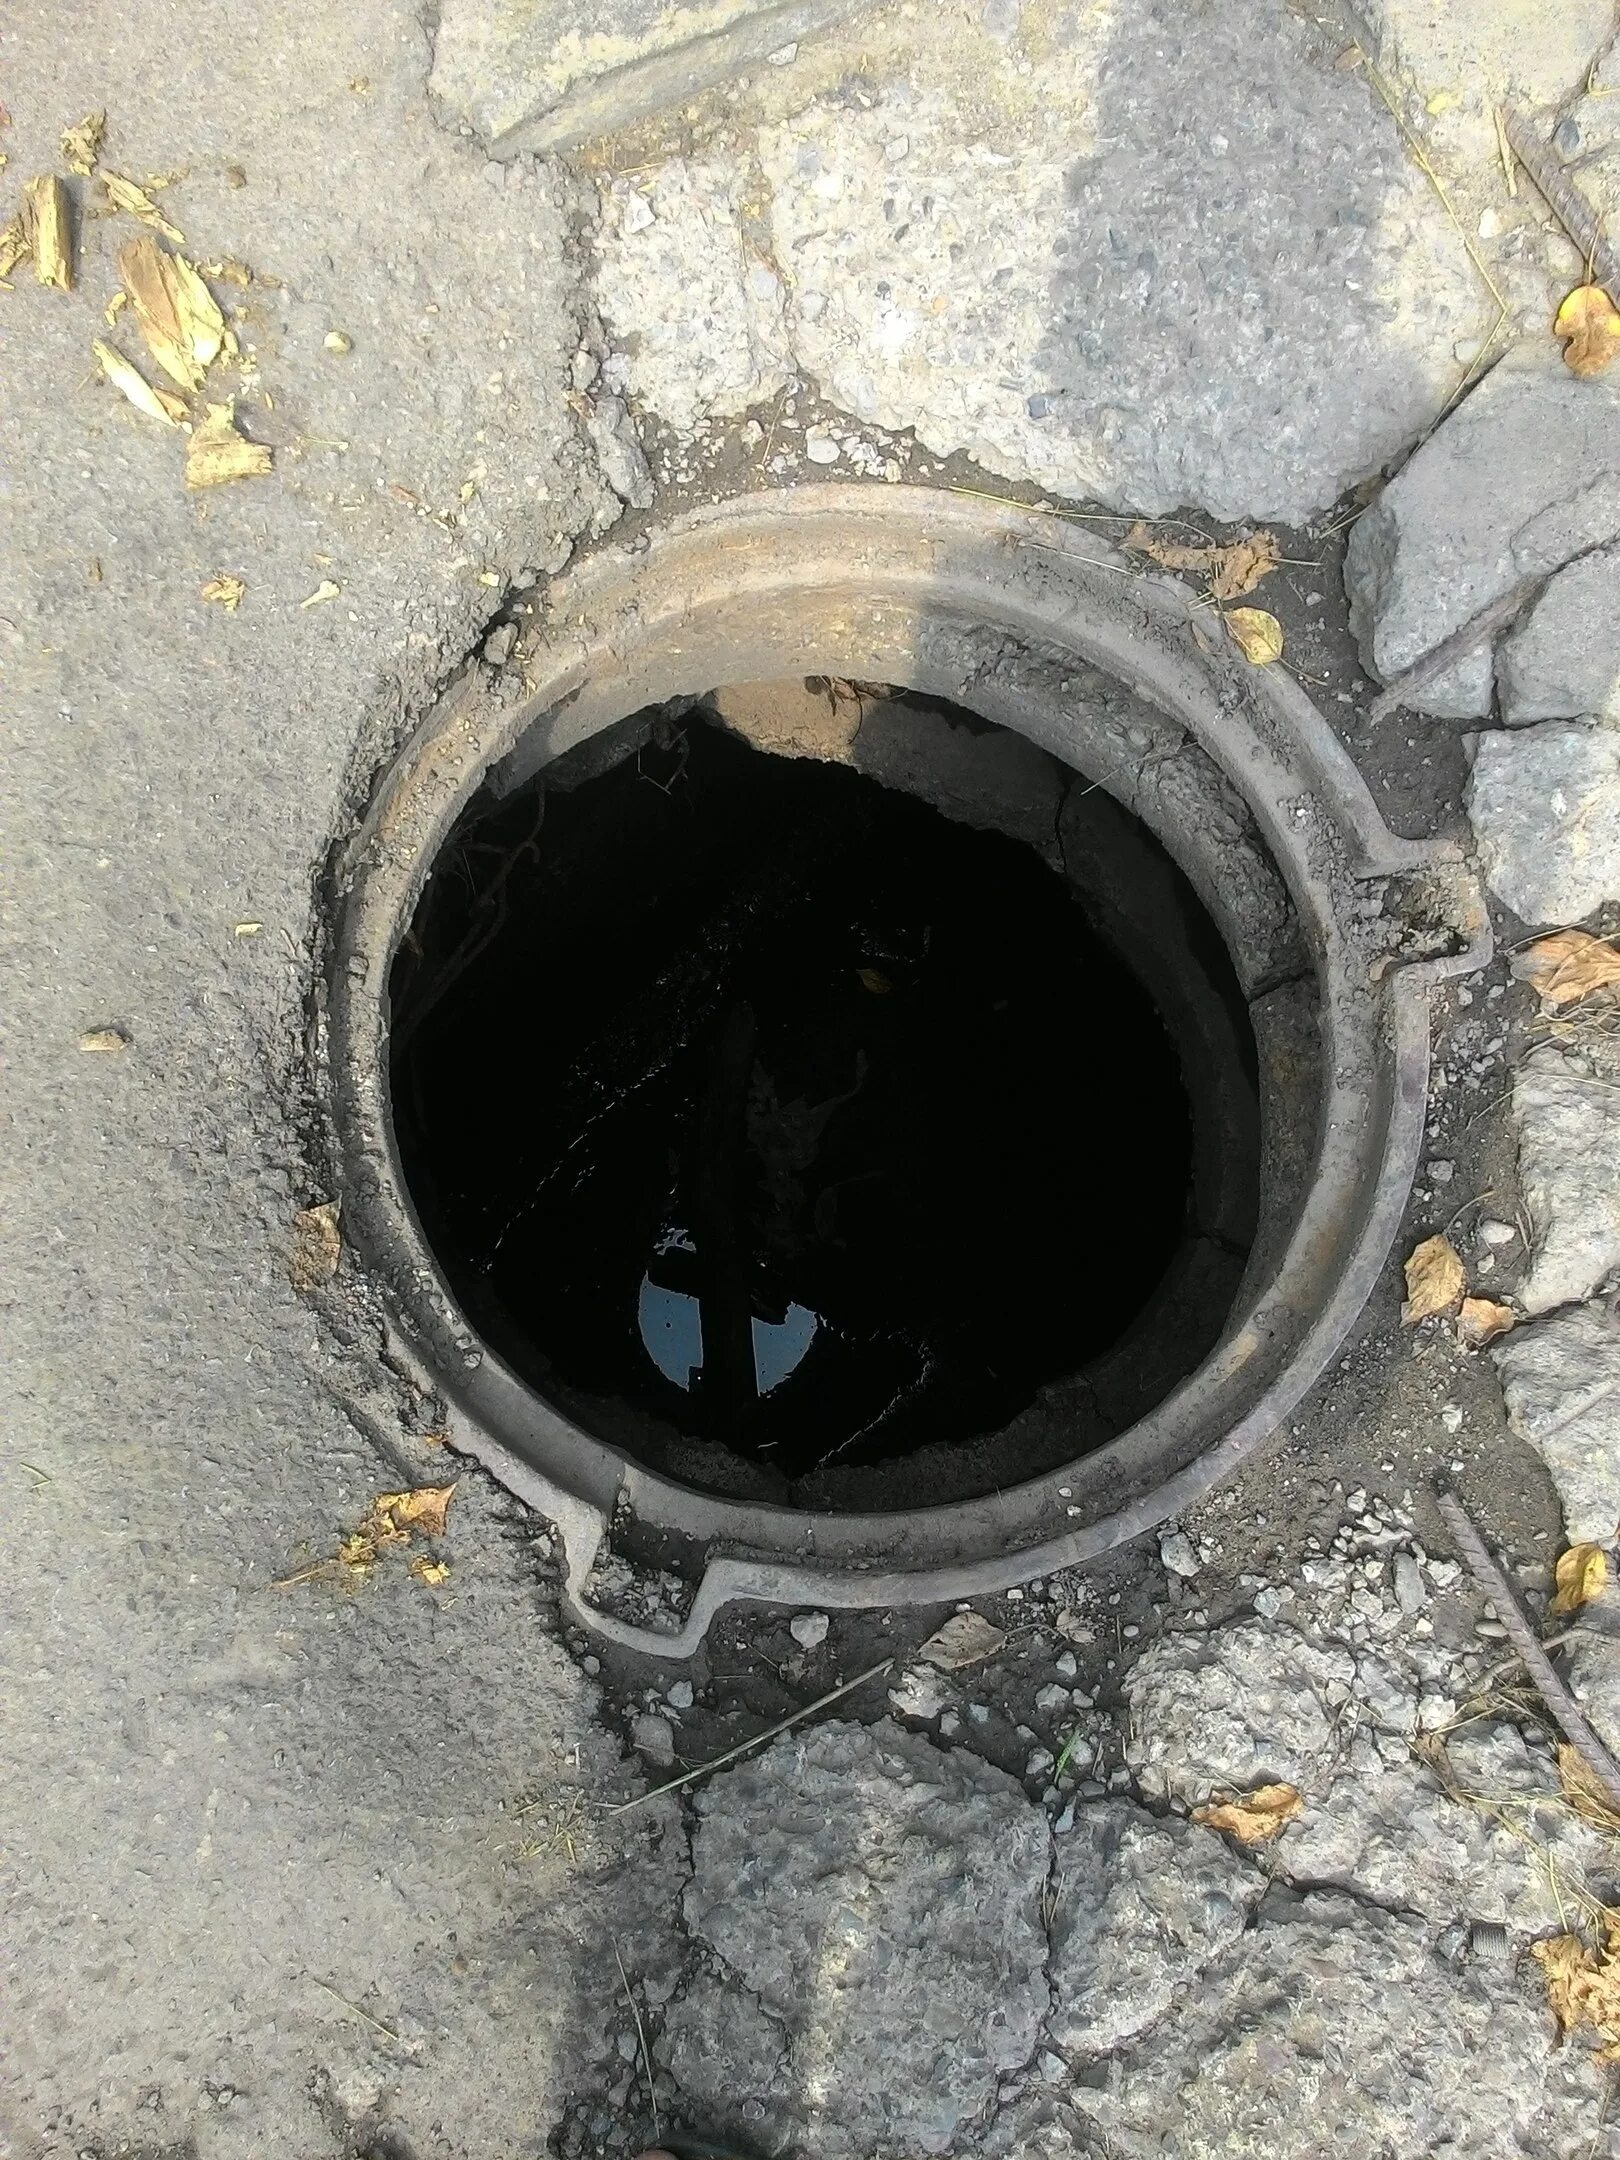 Ссд люк. Открытый канализационный люк. Открытый люк канализации. Открытые канализационные люки. Открытый канализационный колодец.